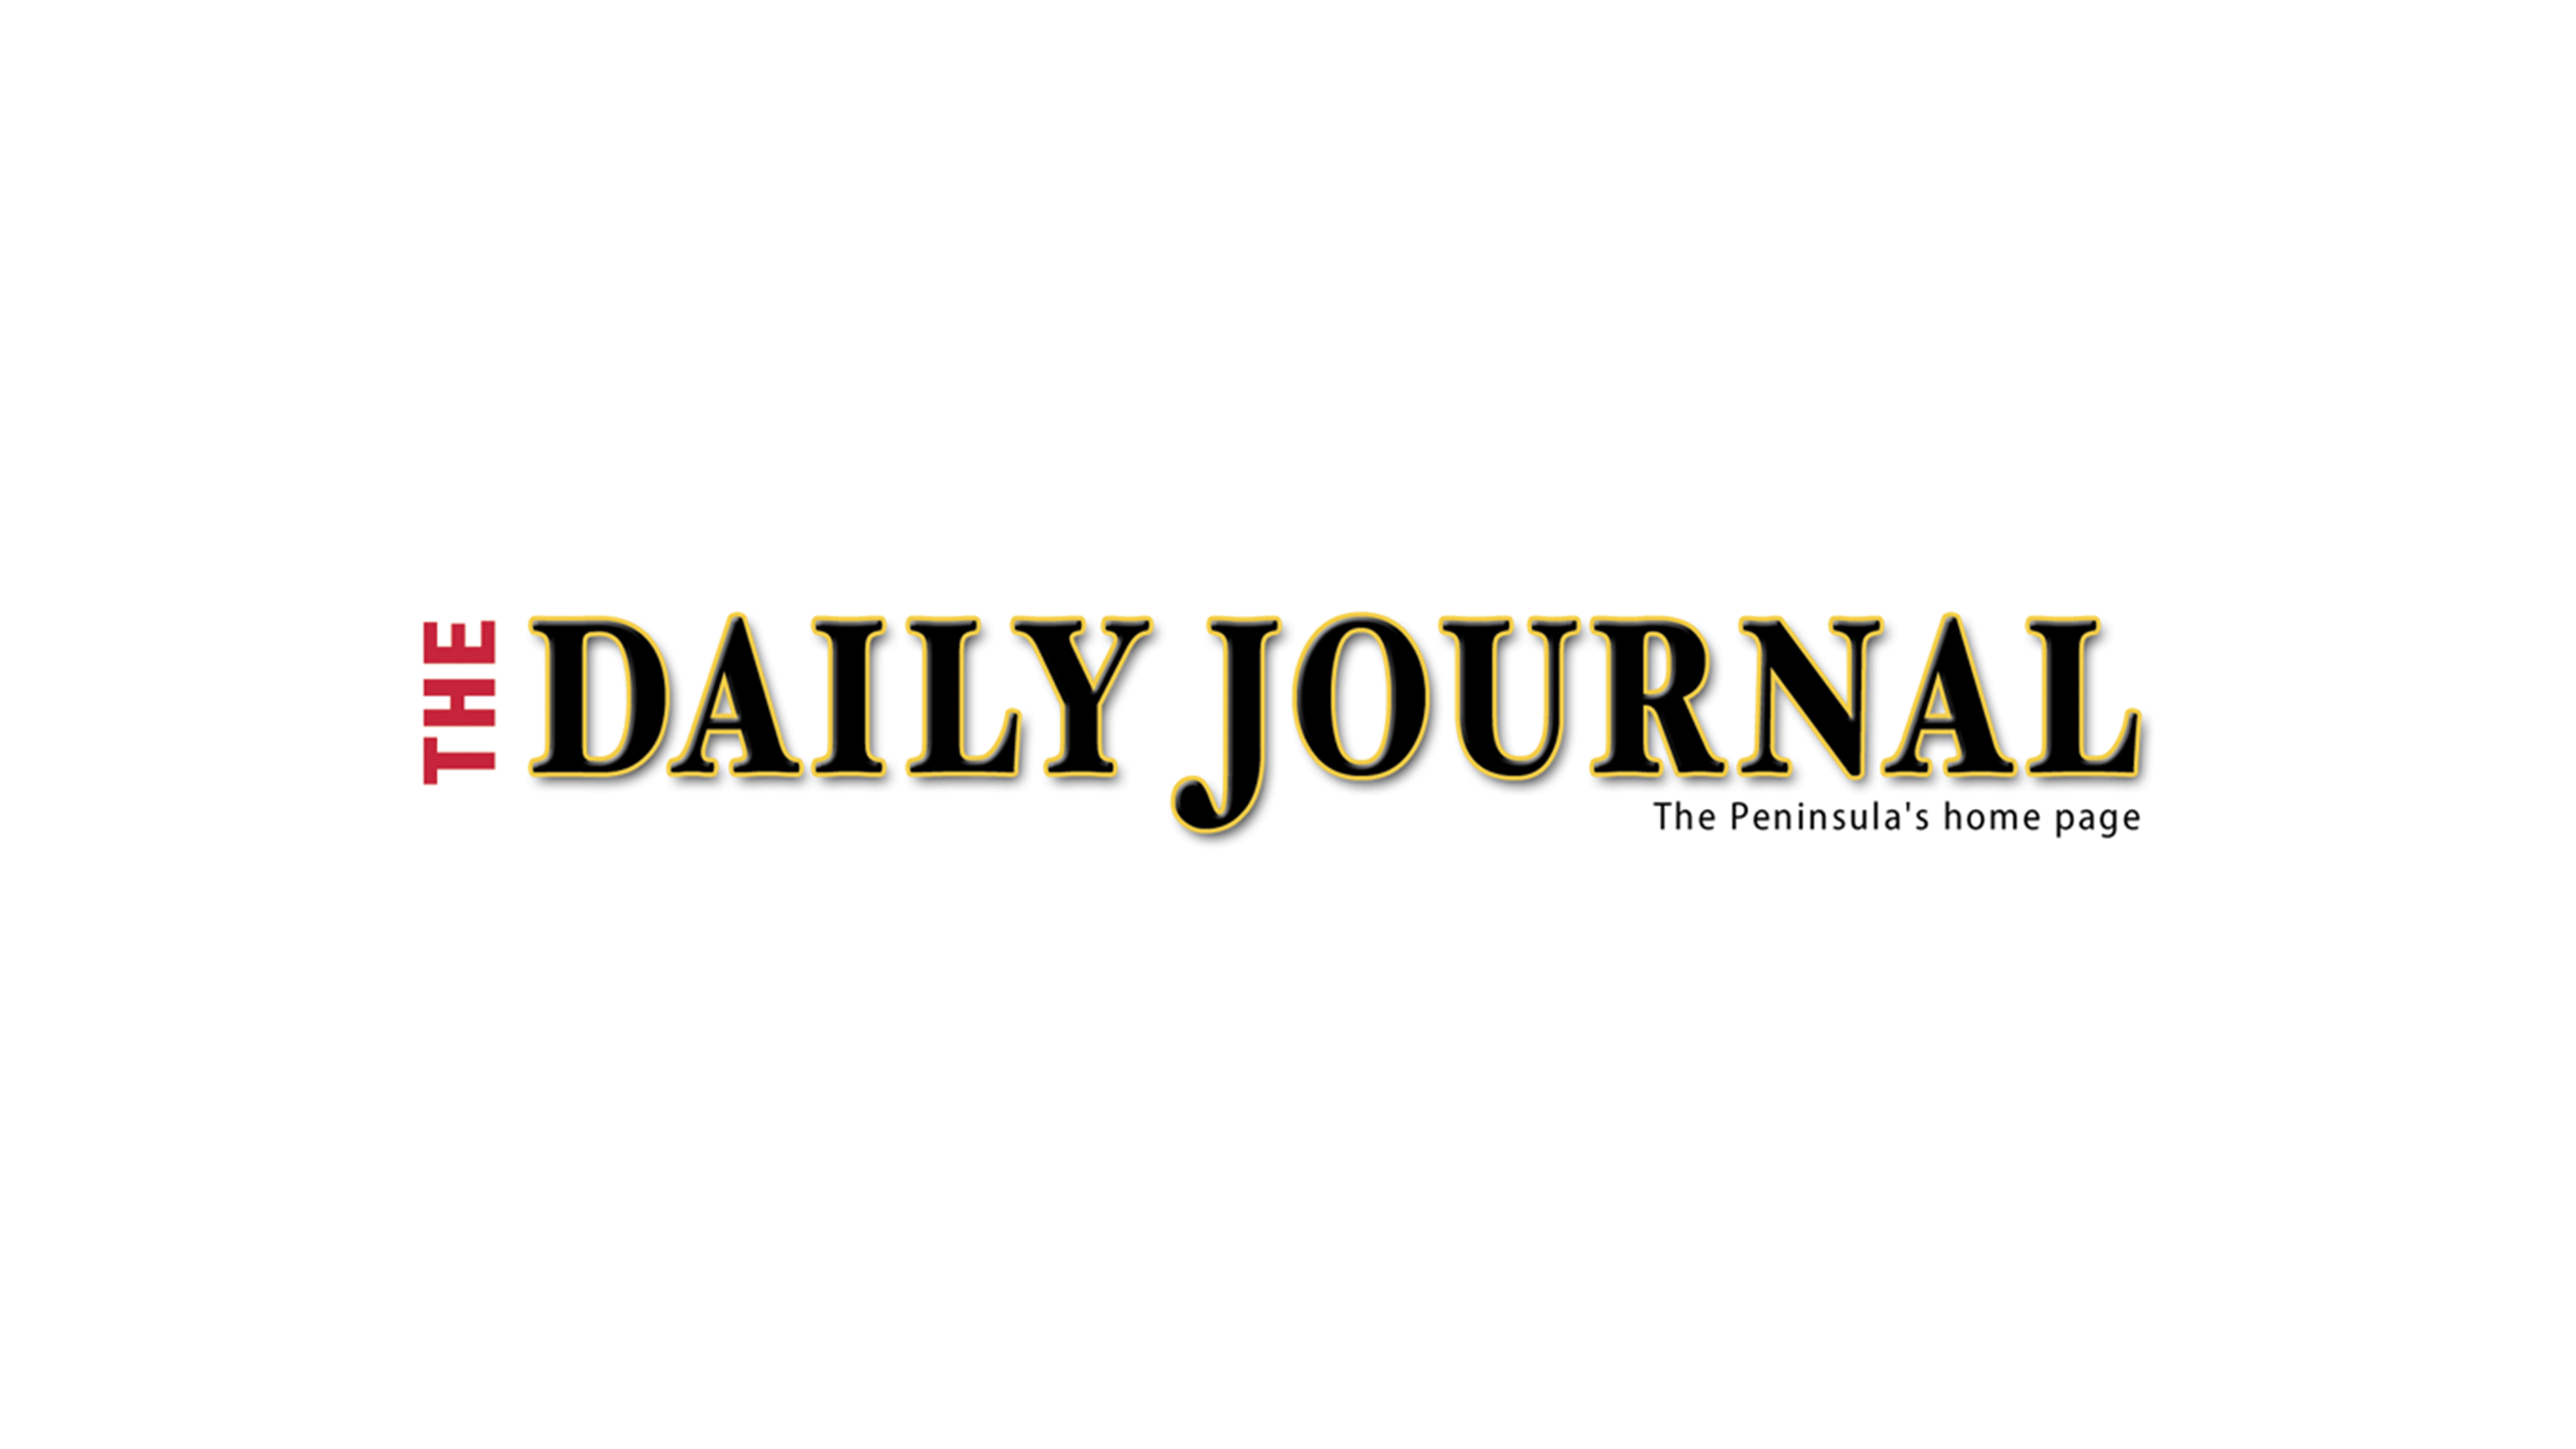 Cobertura mediática del círculo más amplio en The Daily Journal